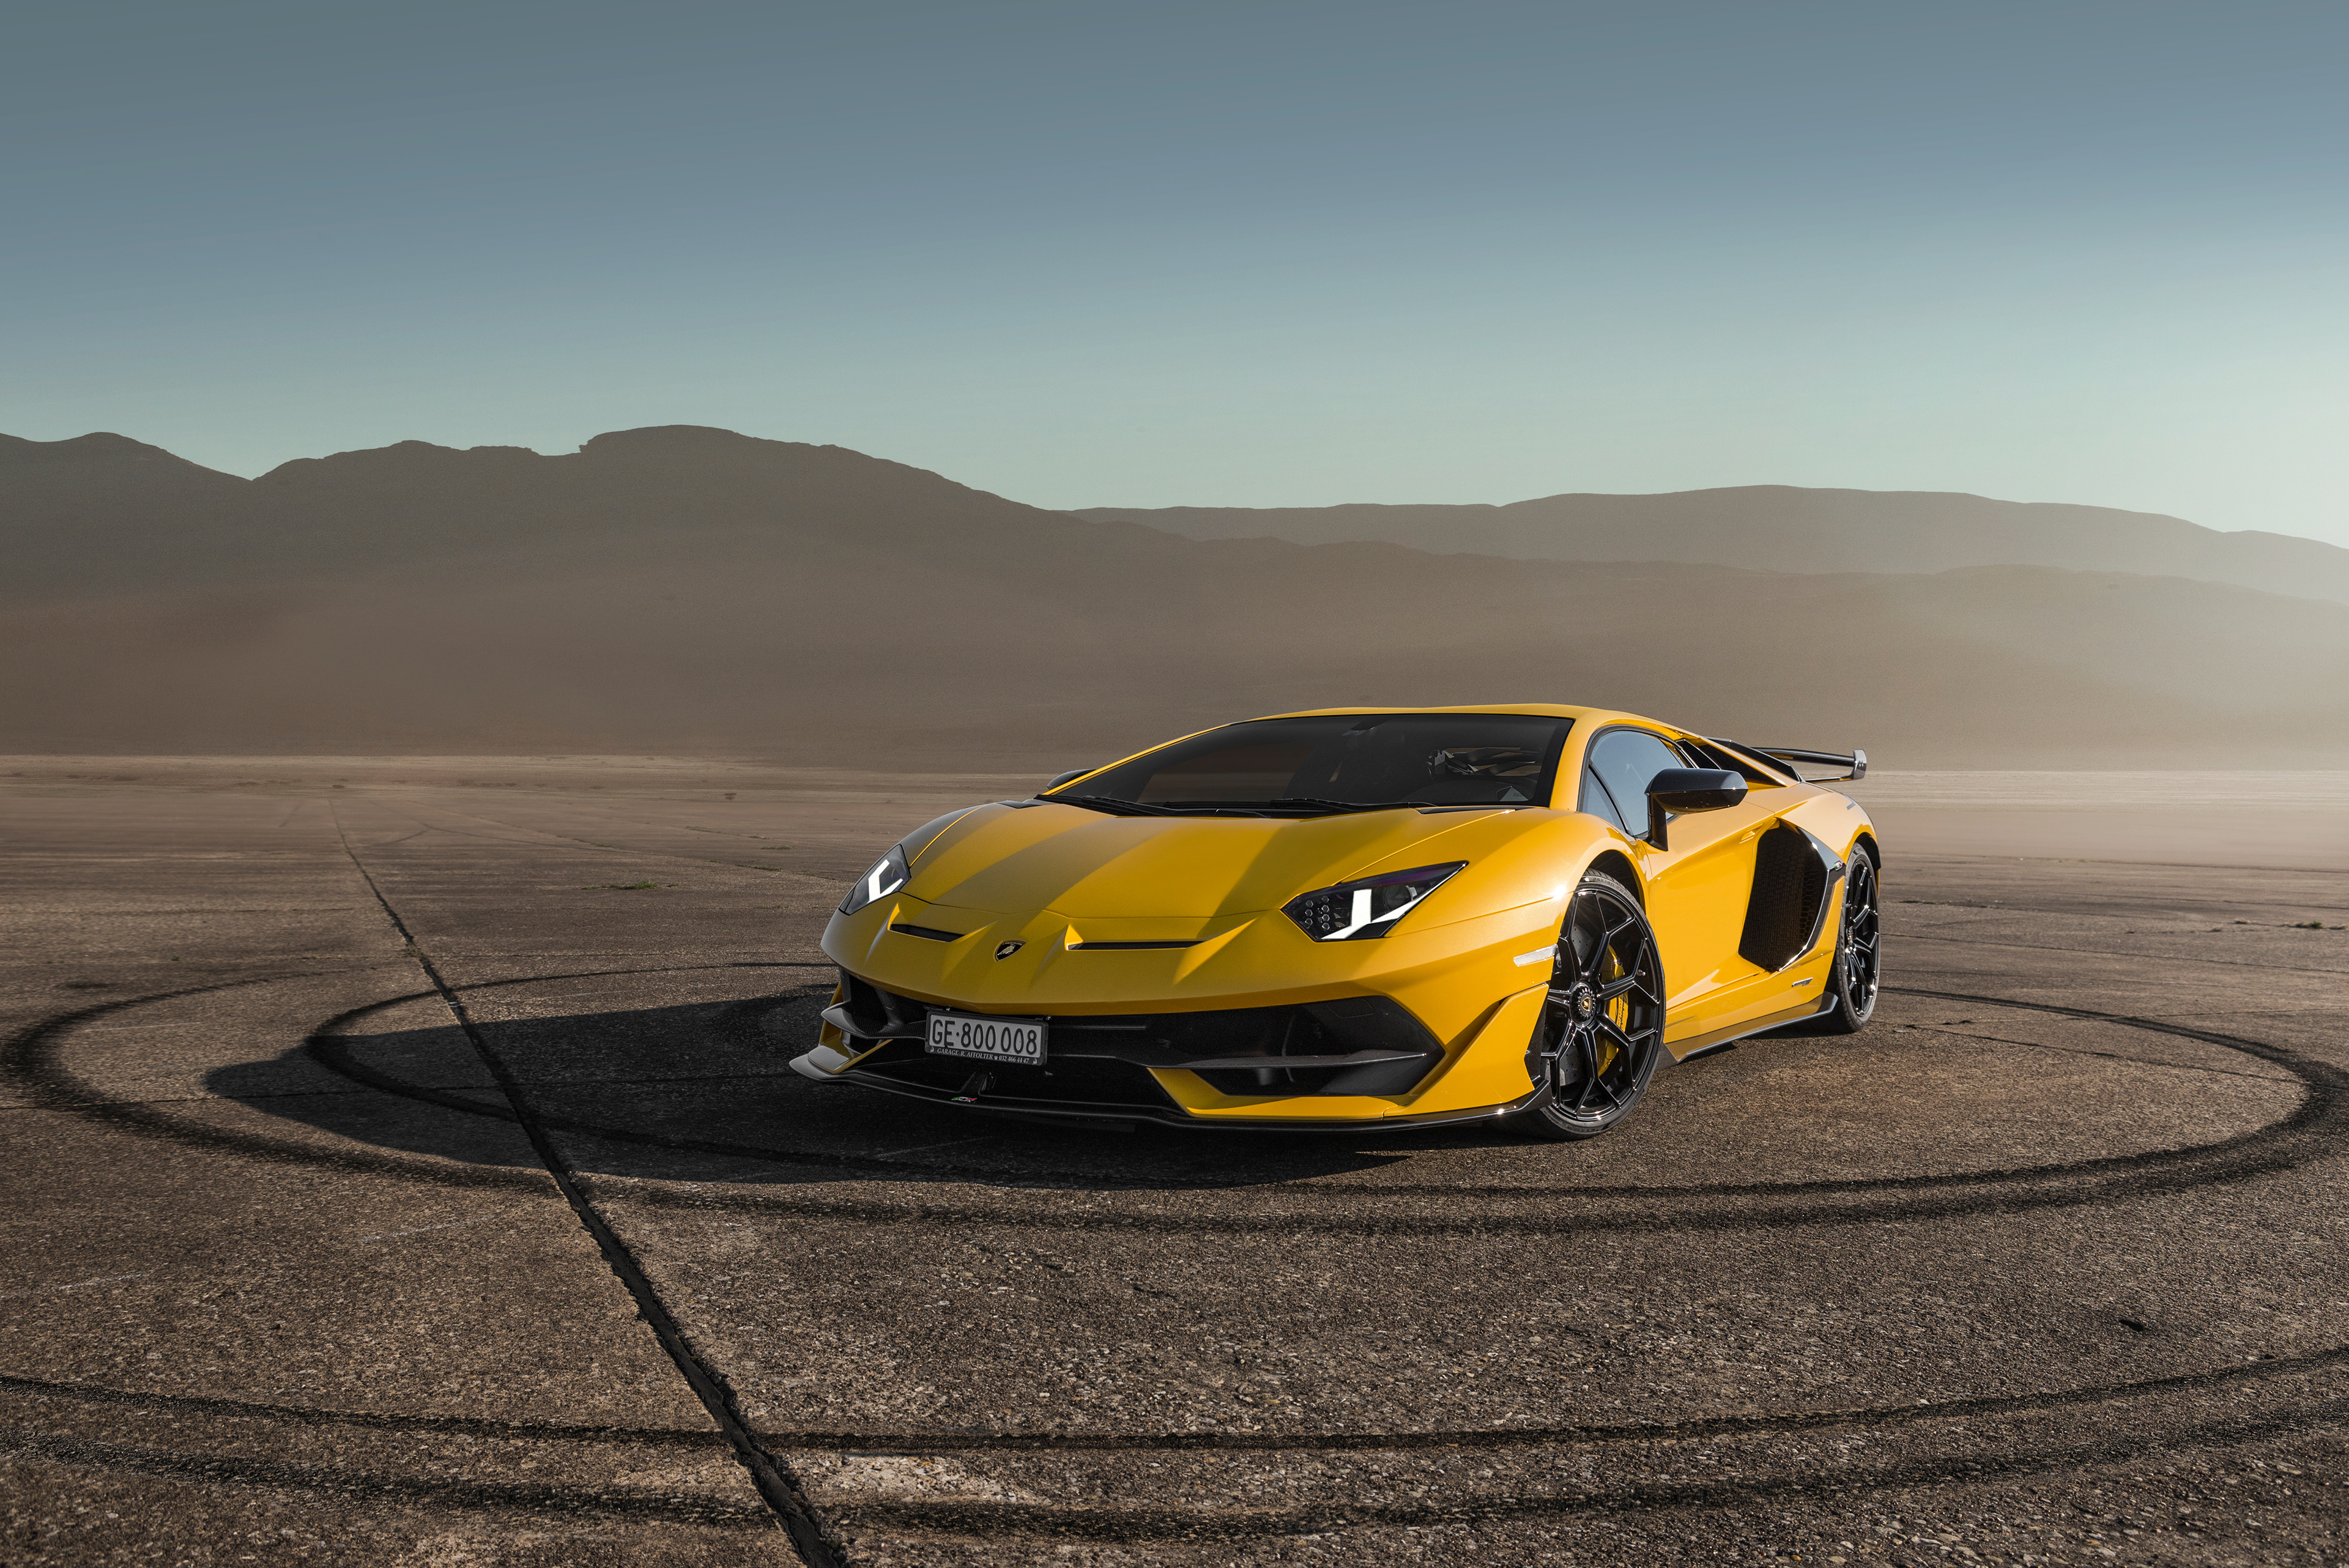 Lamborghini Aventardor SVJ 4k, HD Cars, 4k Wallpapers, Images